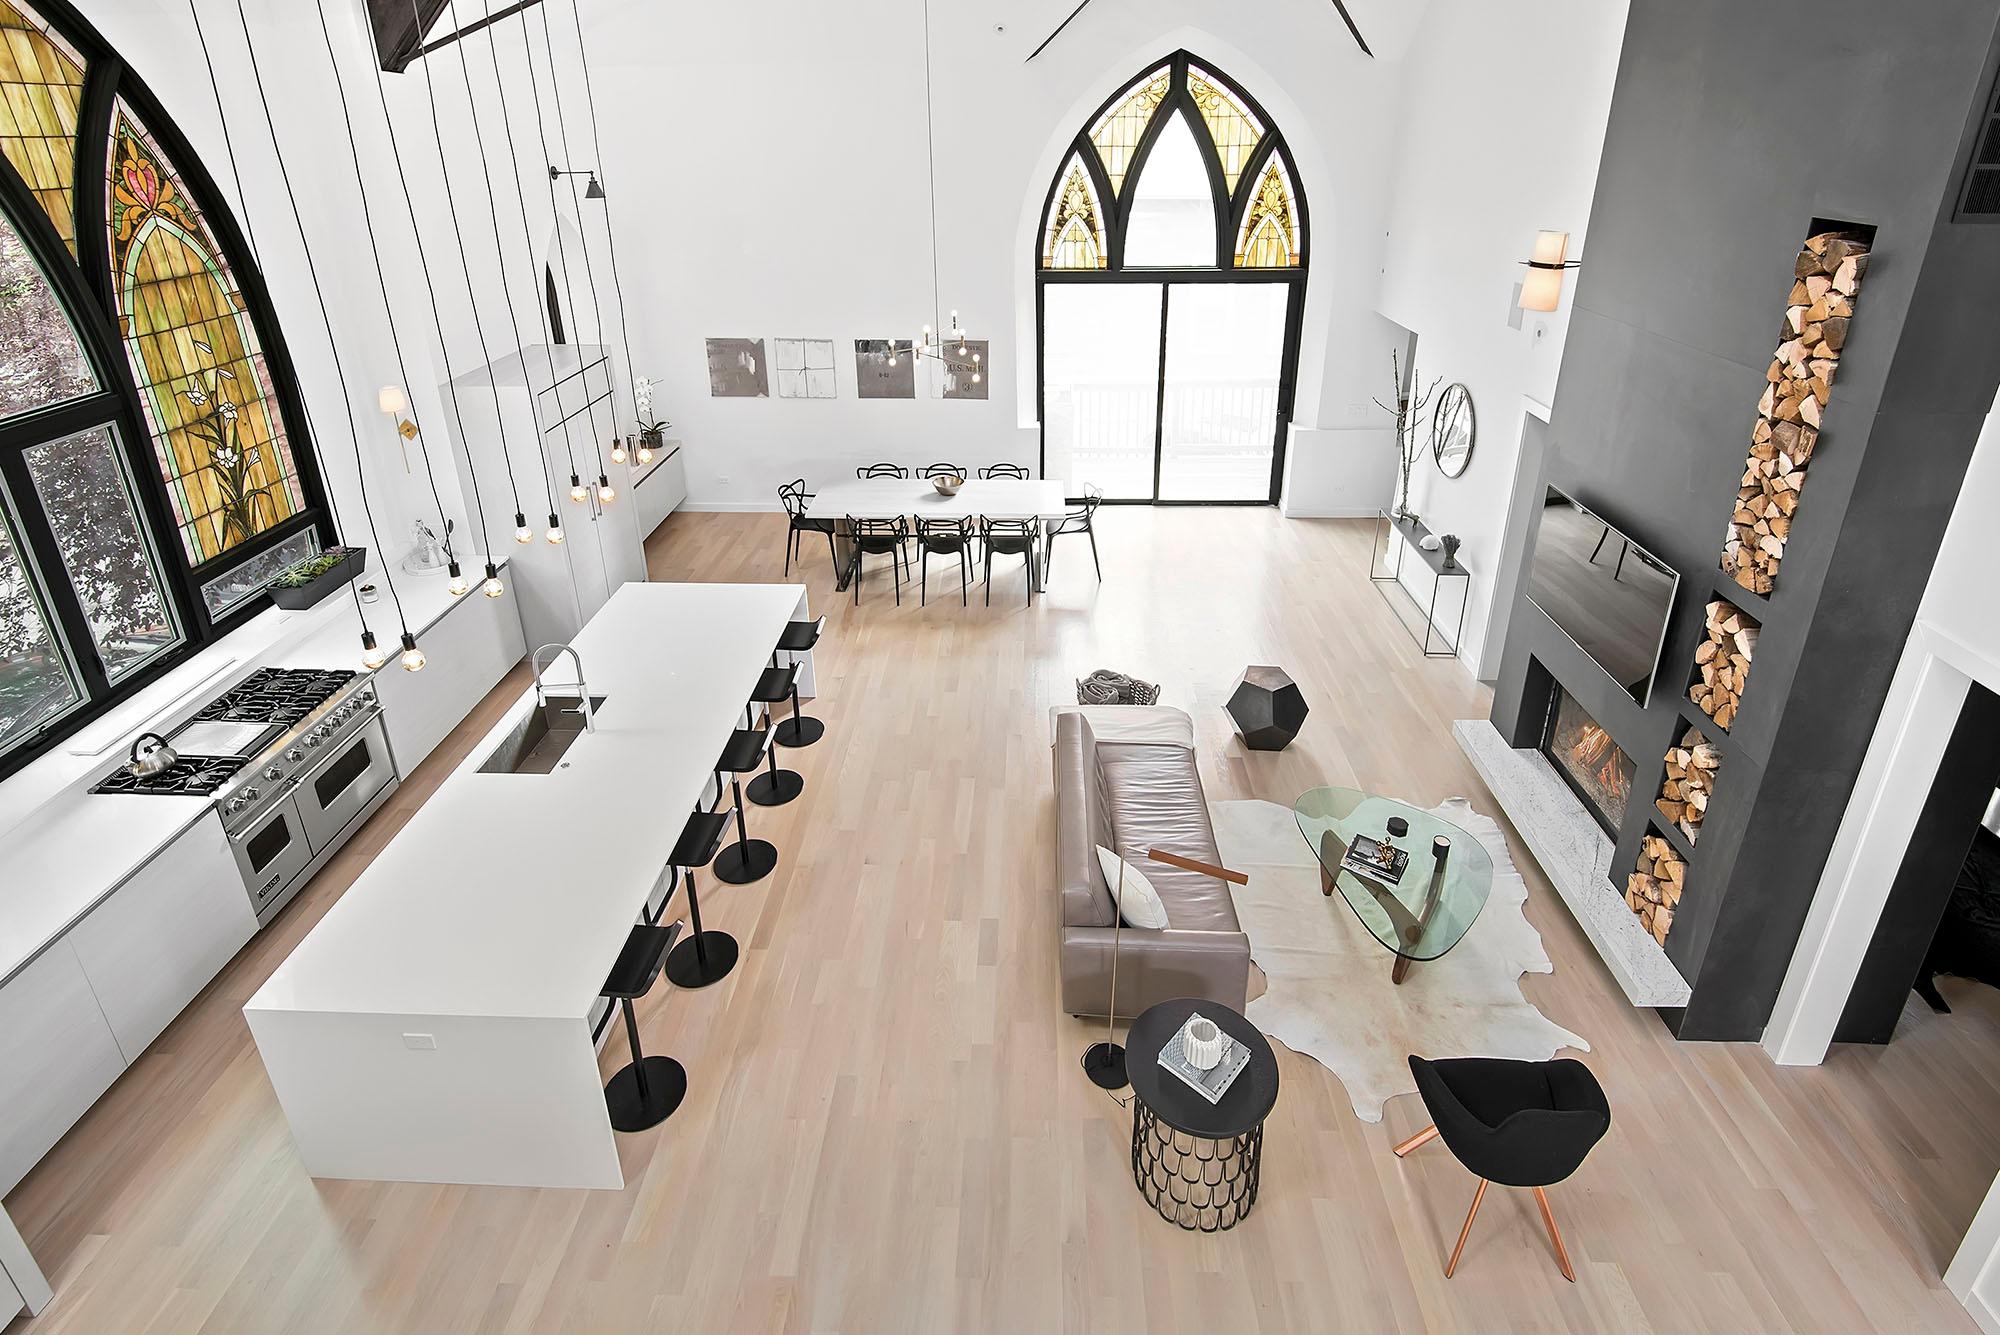 Wohnbereich einer ausgebauten Kirche #kamin #kücheninsel ©Scarfano Architects/Jim Tschetter